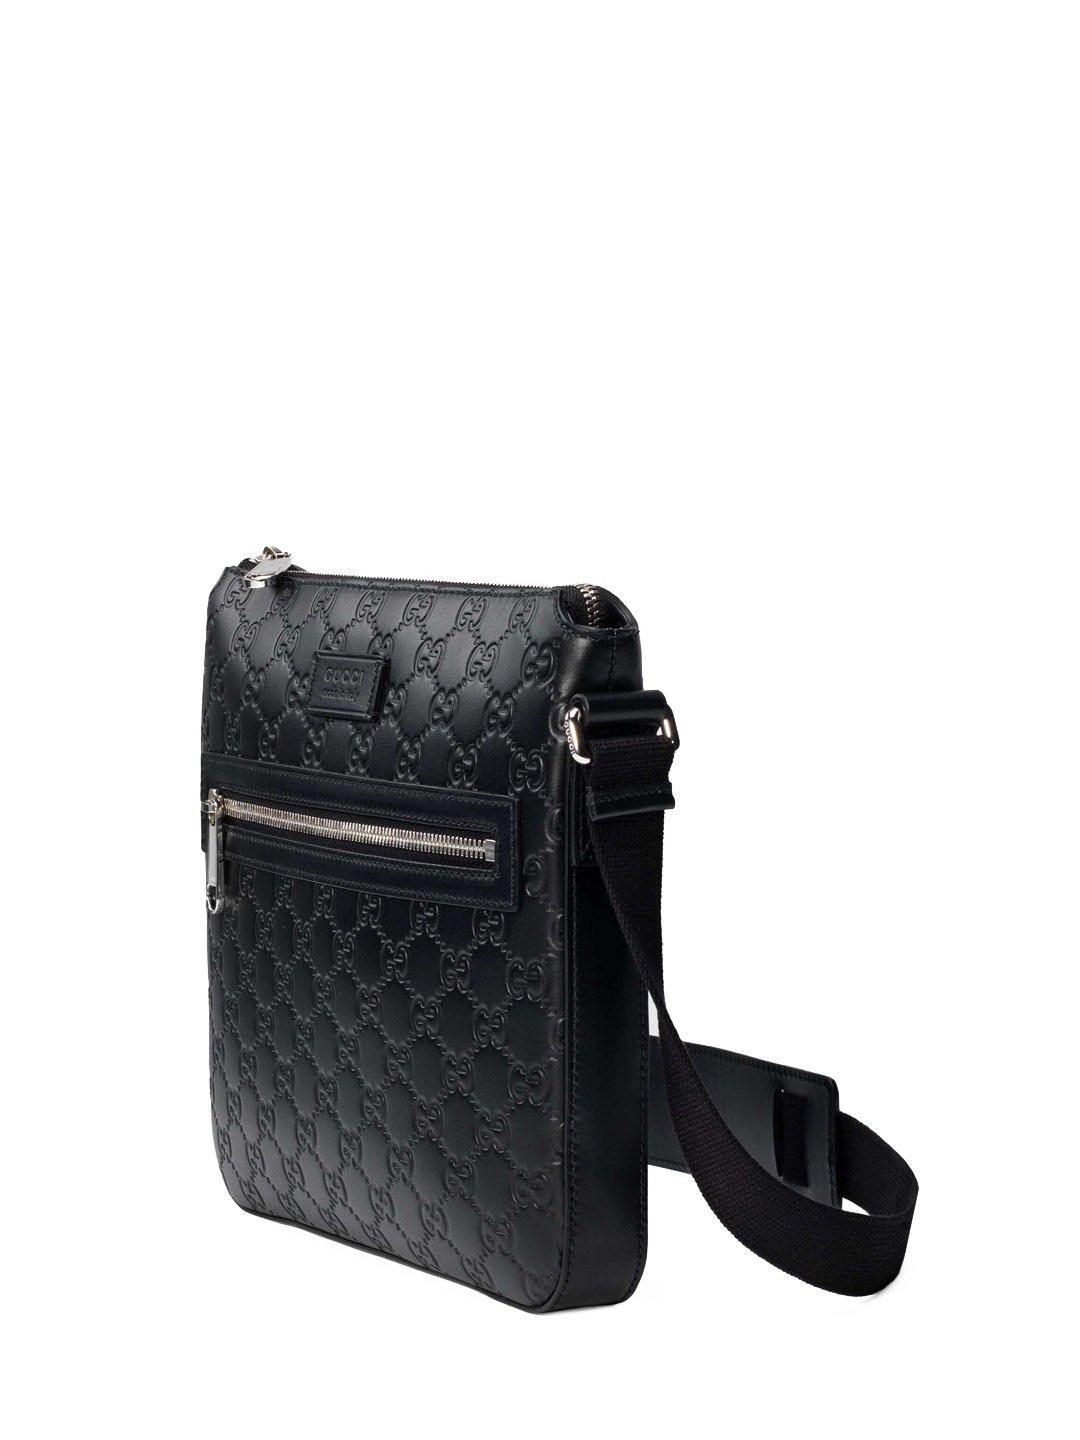 gucci black leather messenger bag